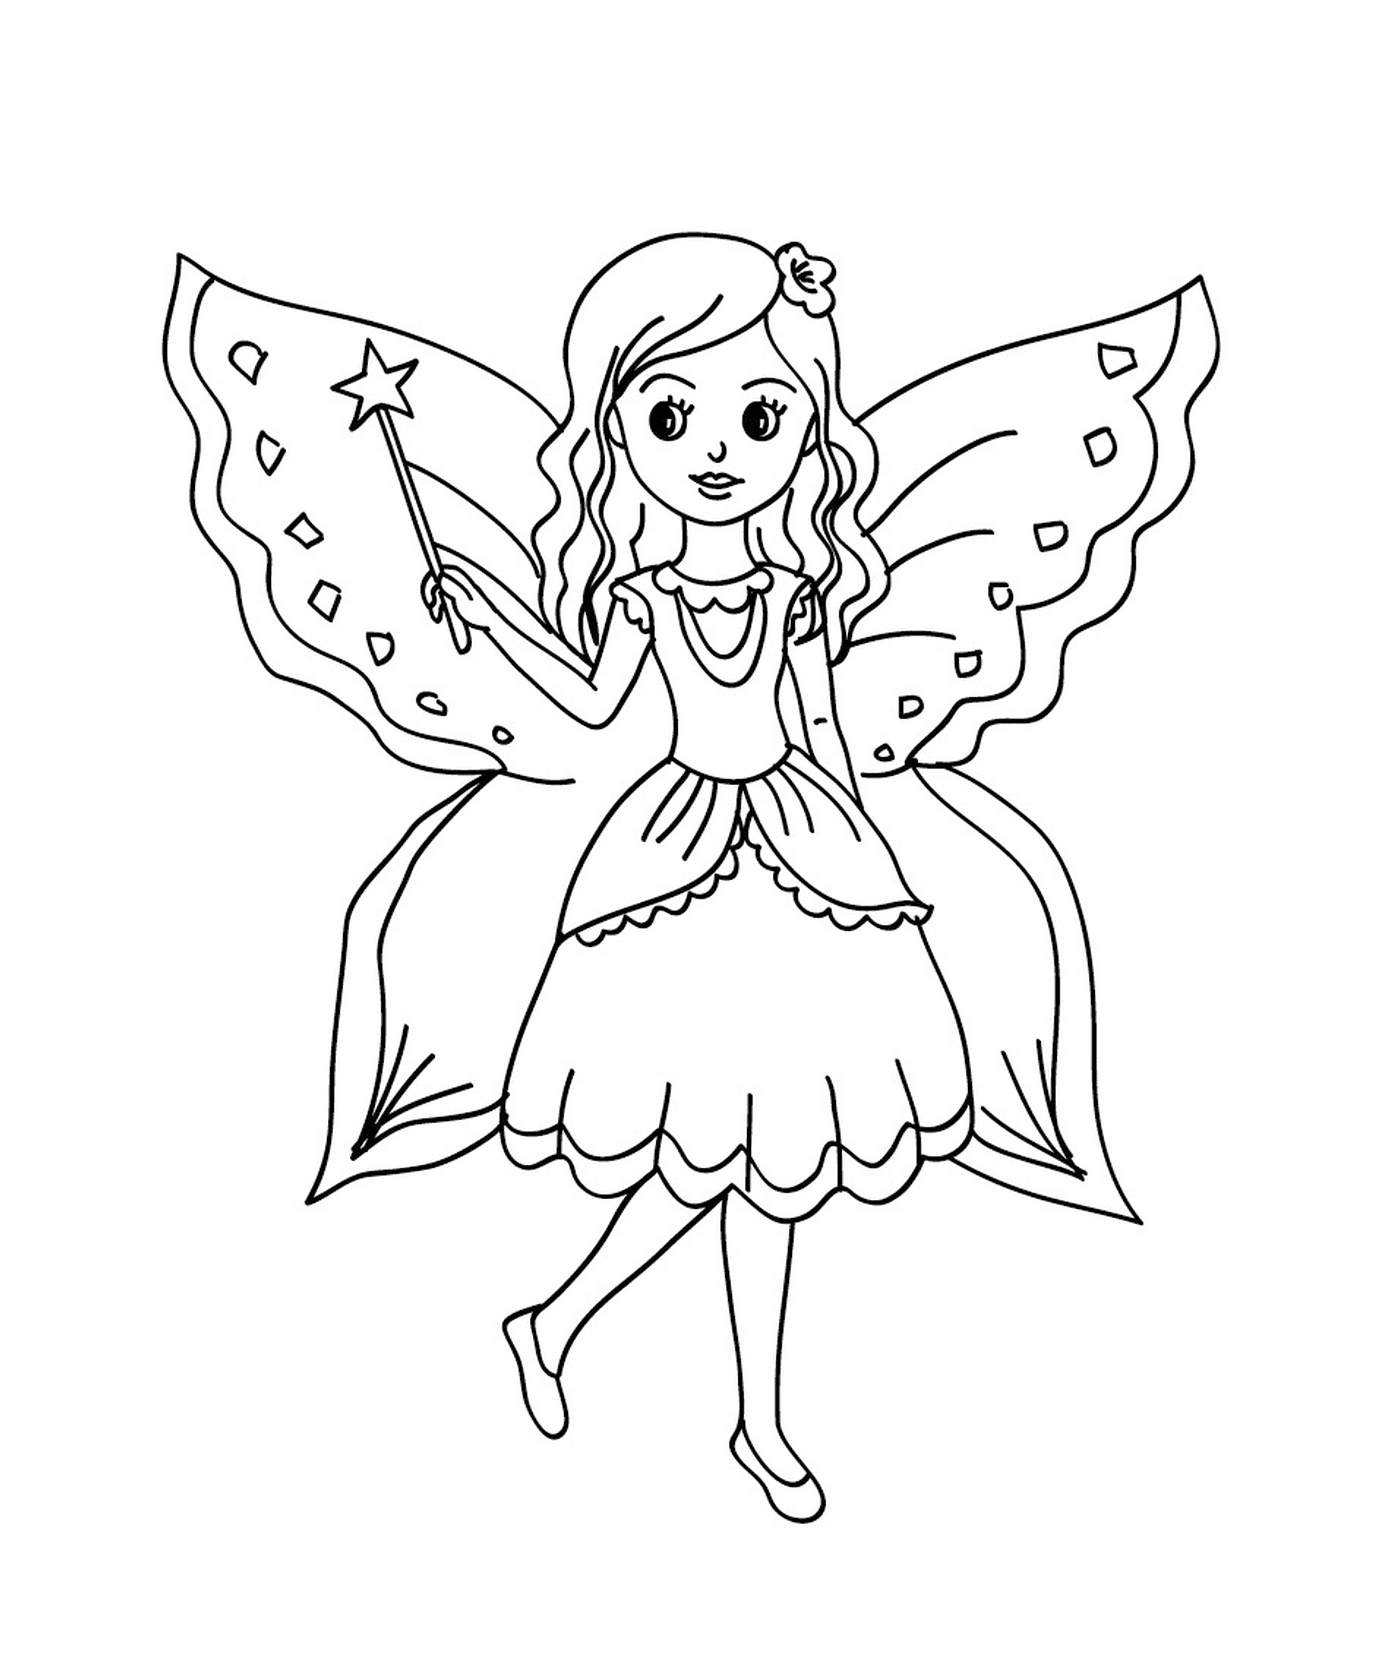  An eight-year-old fairy 